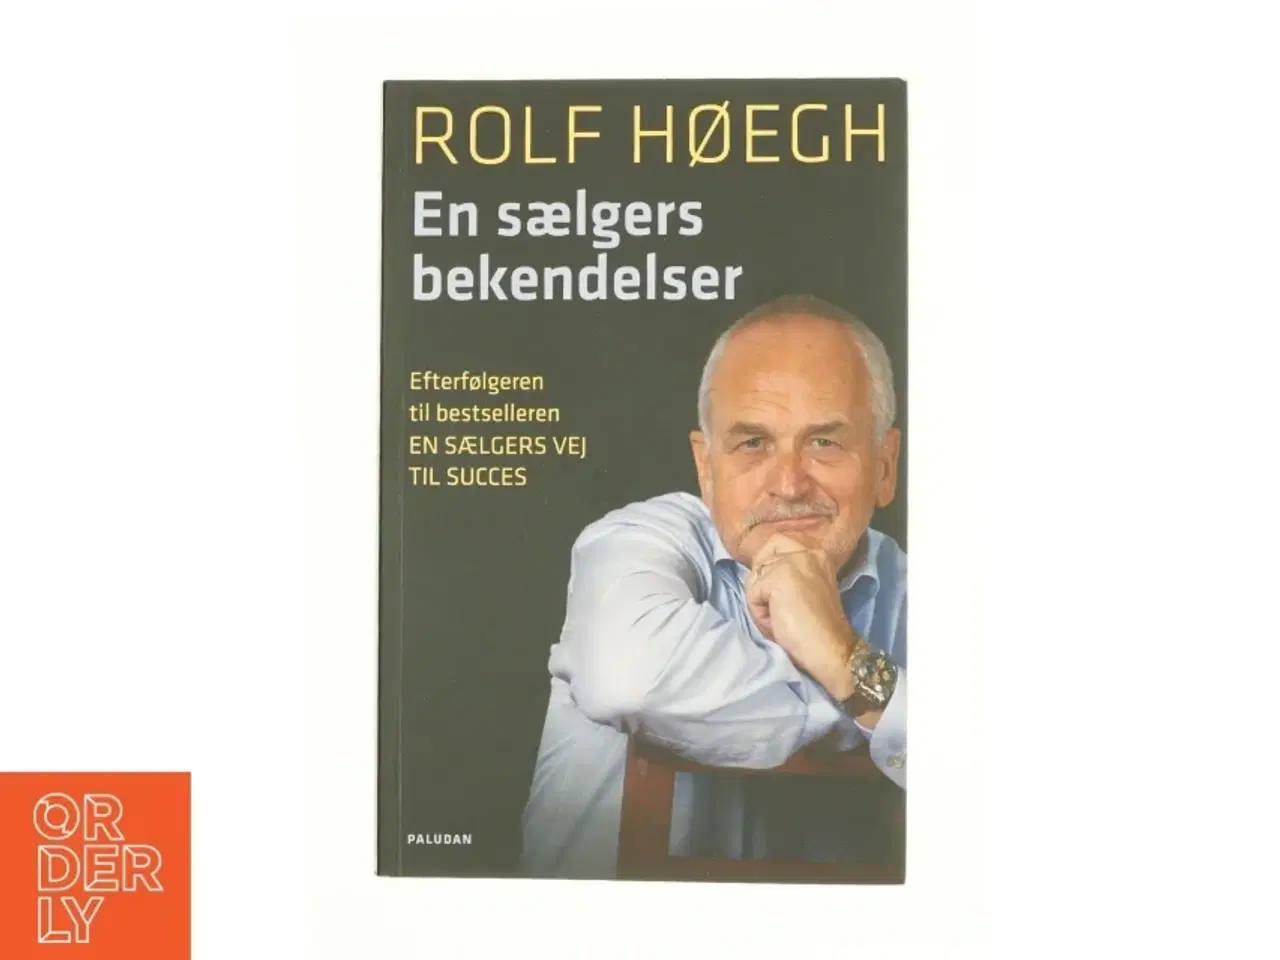 Billede 1 - En sælgers bekendelser af Rolf Høegh (Bog)